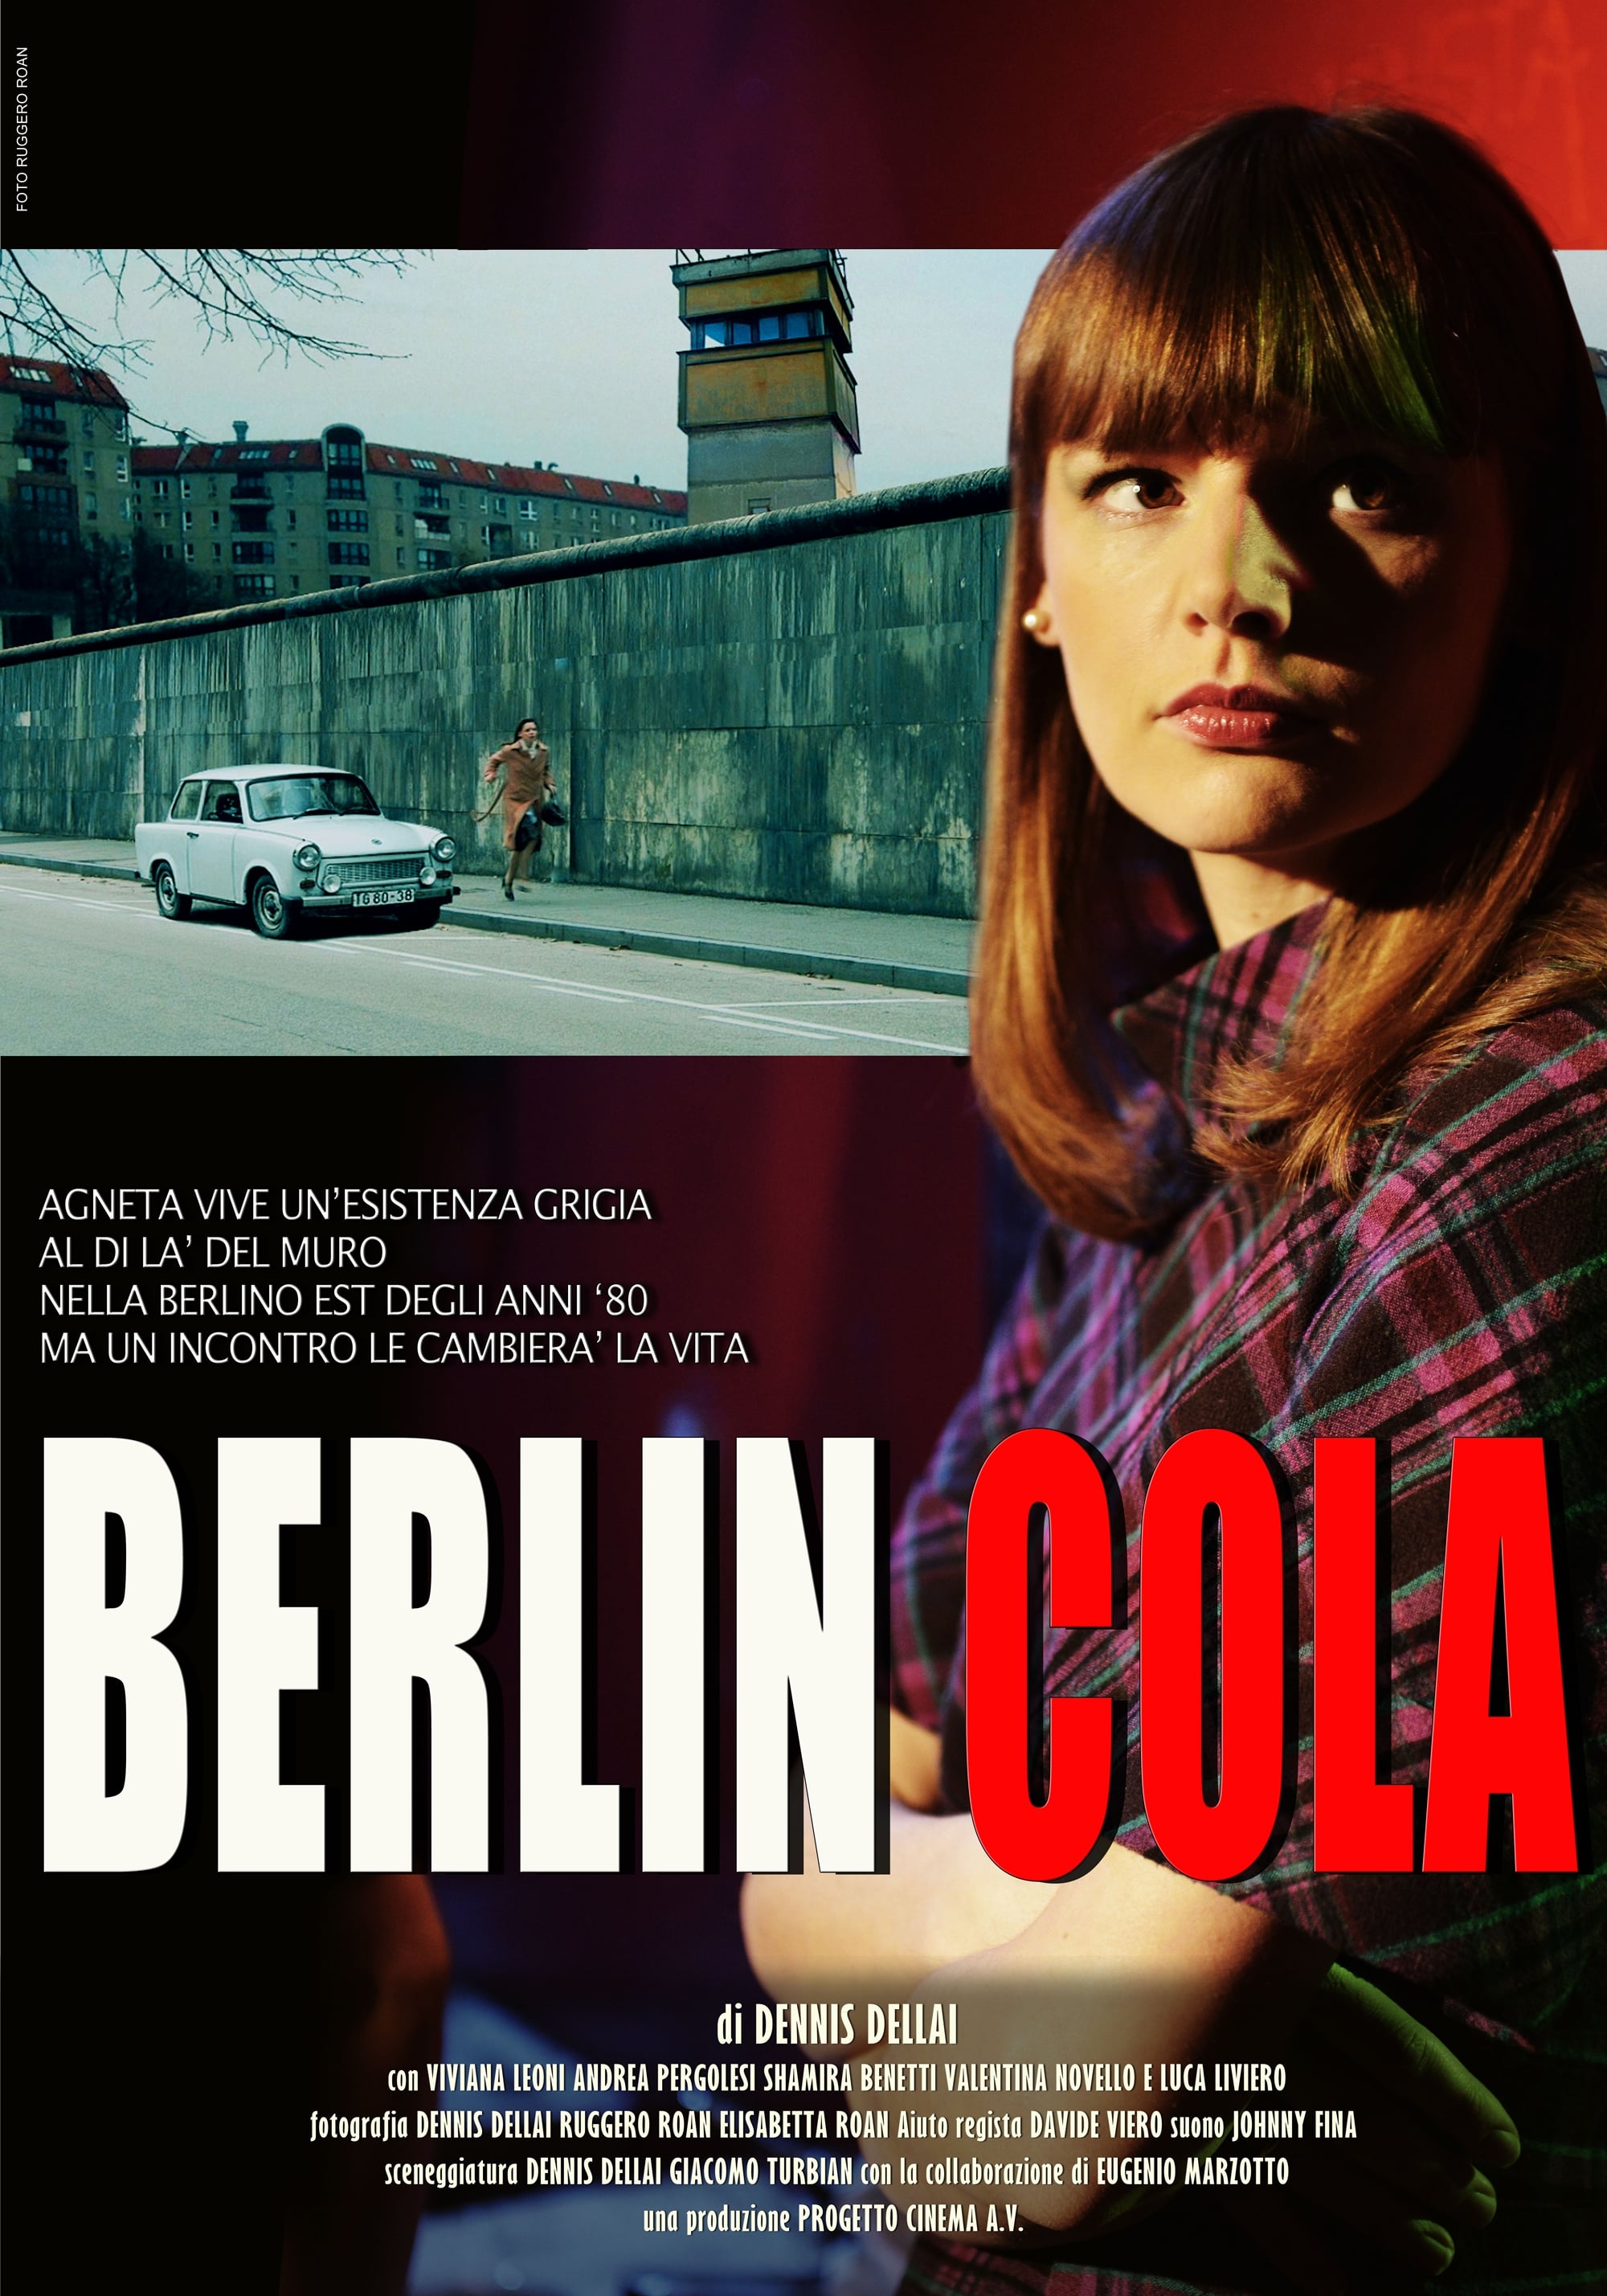 Berlin Cola